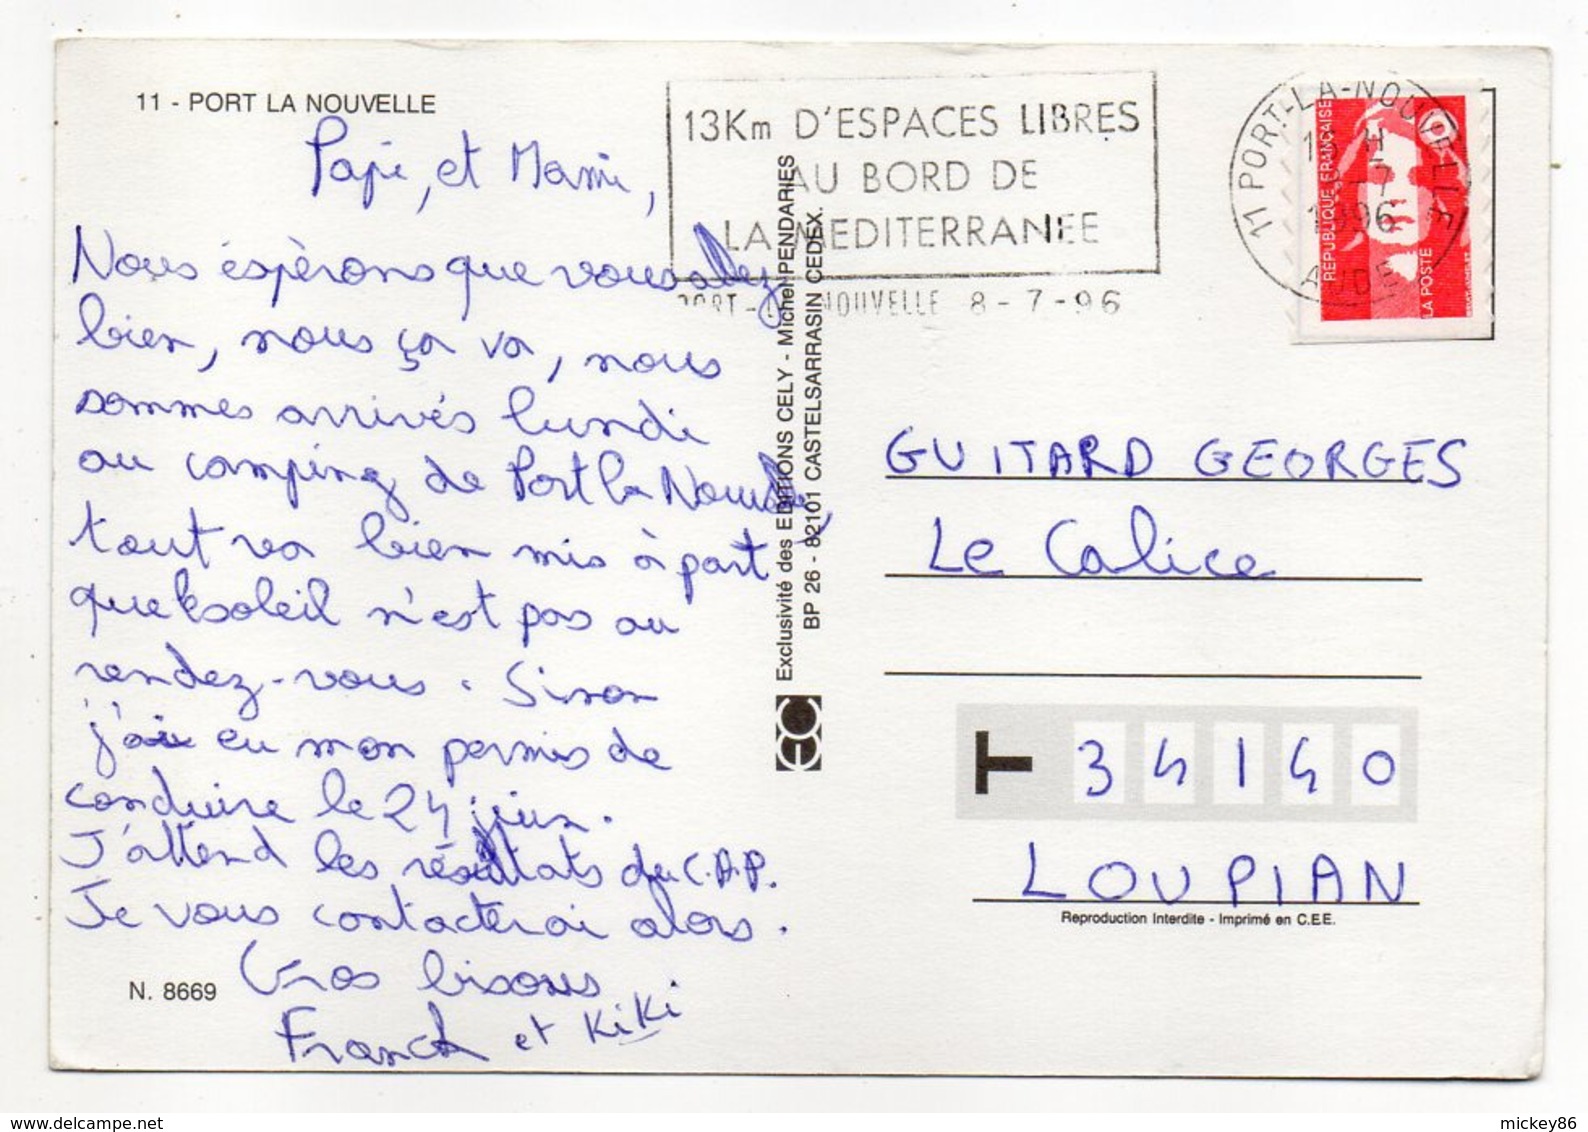 PORT LA NOUVELLE --1996--Vue Générale Aérienne ( Fantaisie  Arc En Ciel)--timbre --cachet - Port La Nouvelle